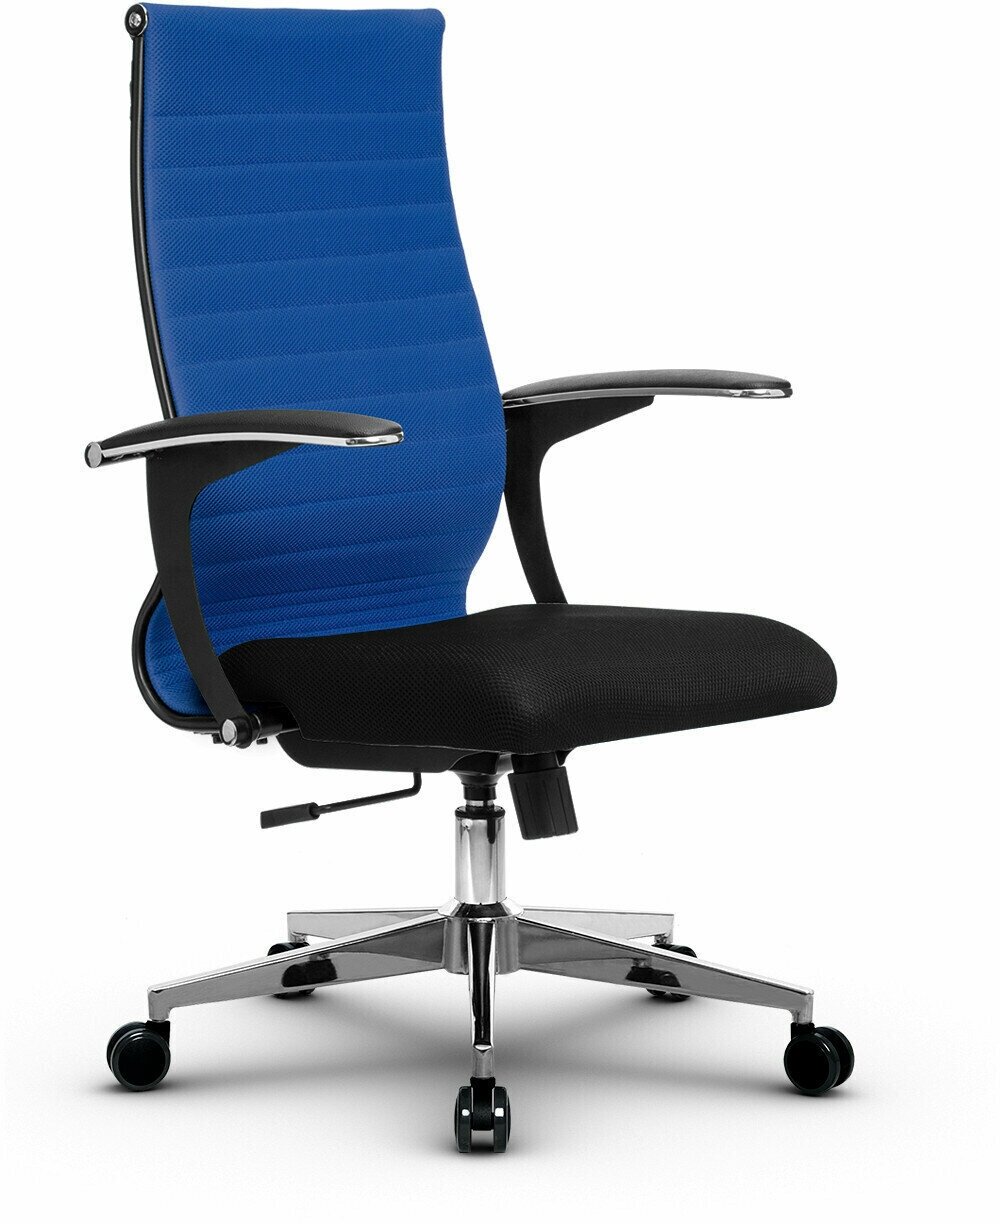 Компьютерное офисное кресло Metta B 2b 19/U158, осн. 004 (17834), Синее/Черное